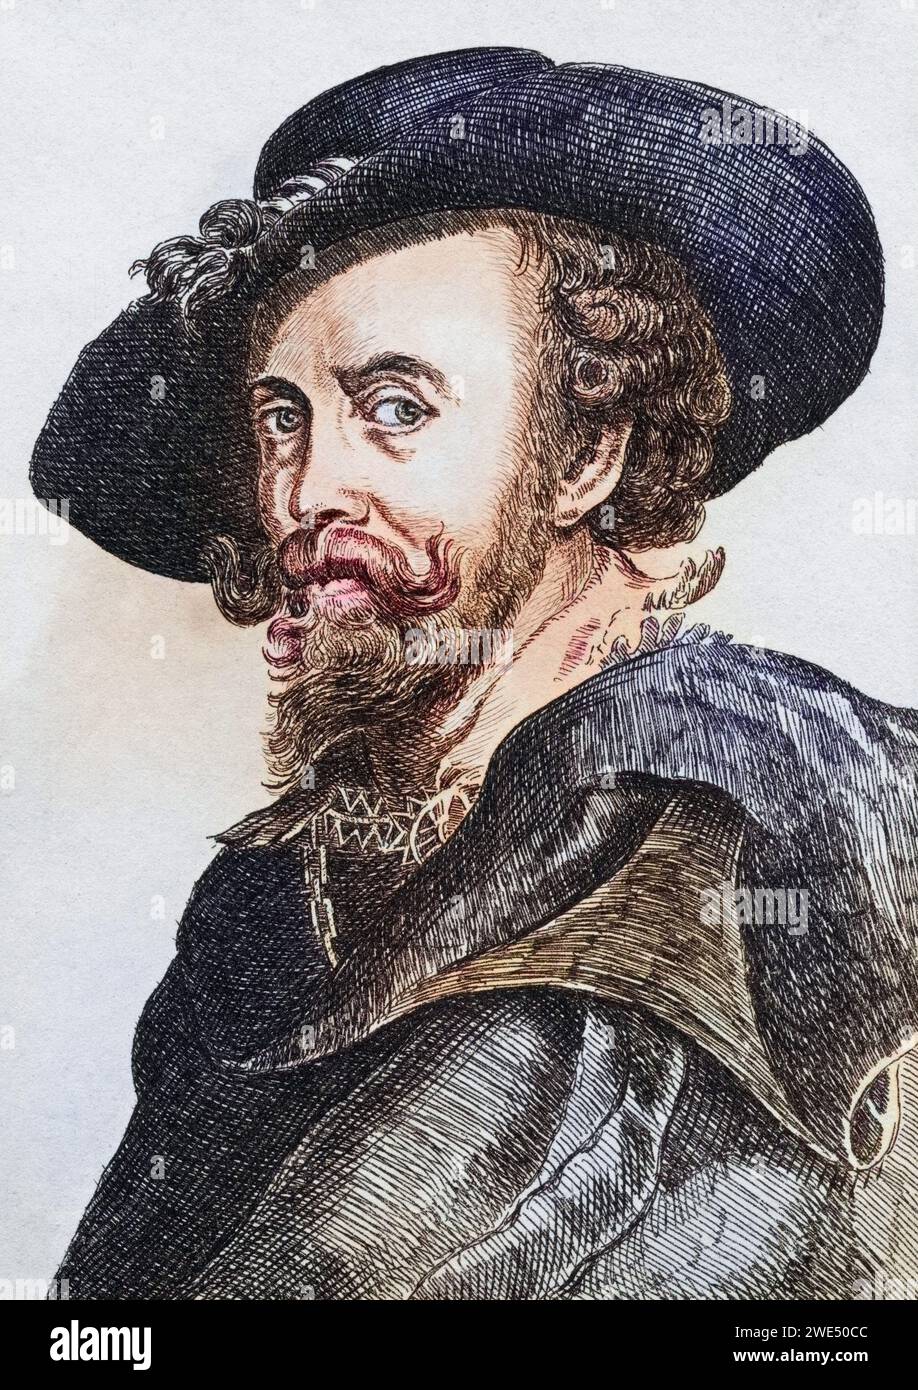 Peter Paul Rubens 1577 n 1640 flämischer Maler, Historisch, digital restaurierte Reproduktion von einer Vorlage aus dem 19. Jahrhundert, Record date not stated Stock Photo